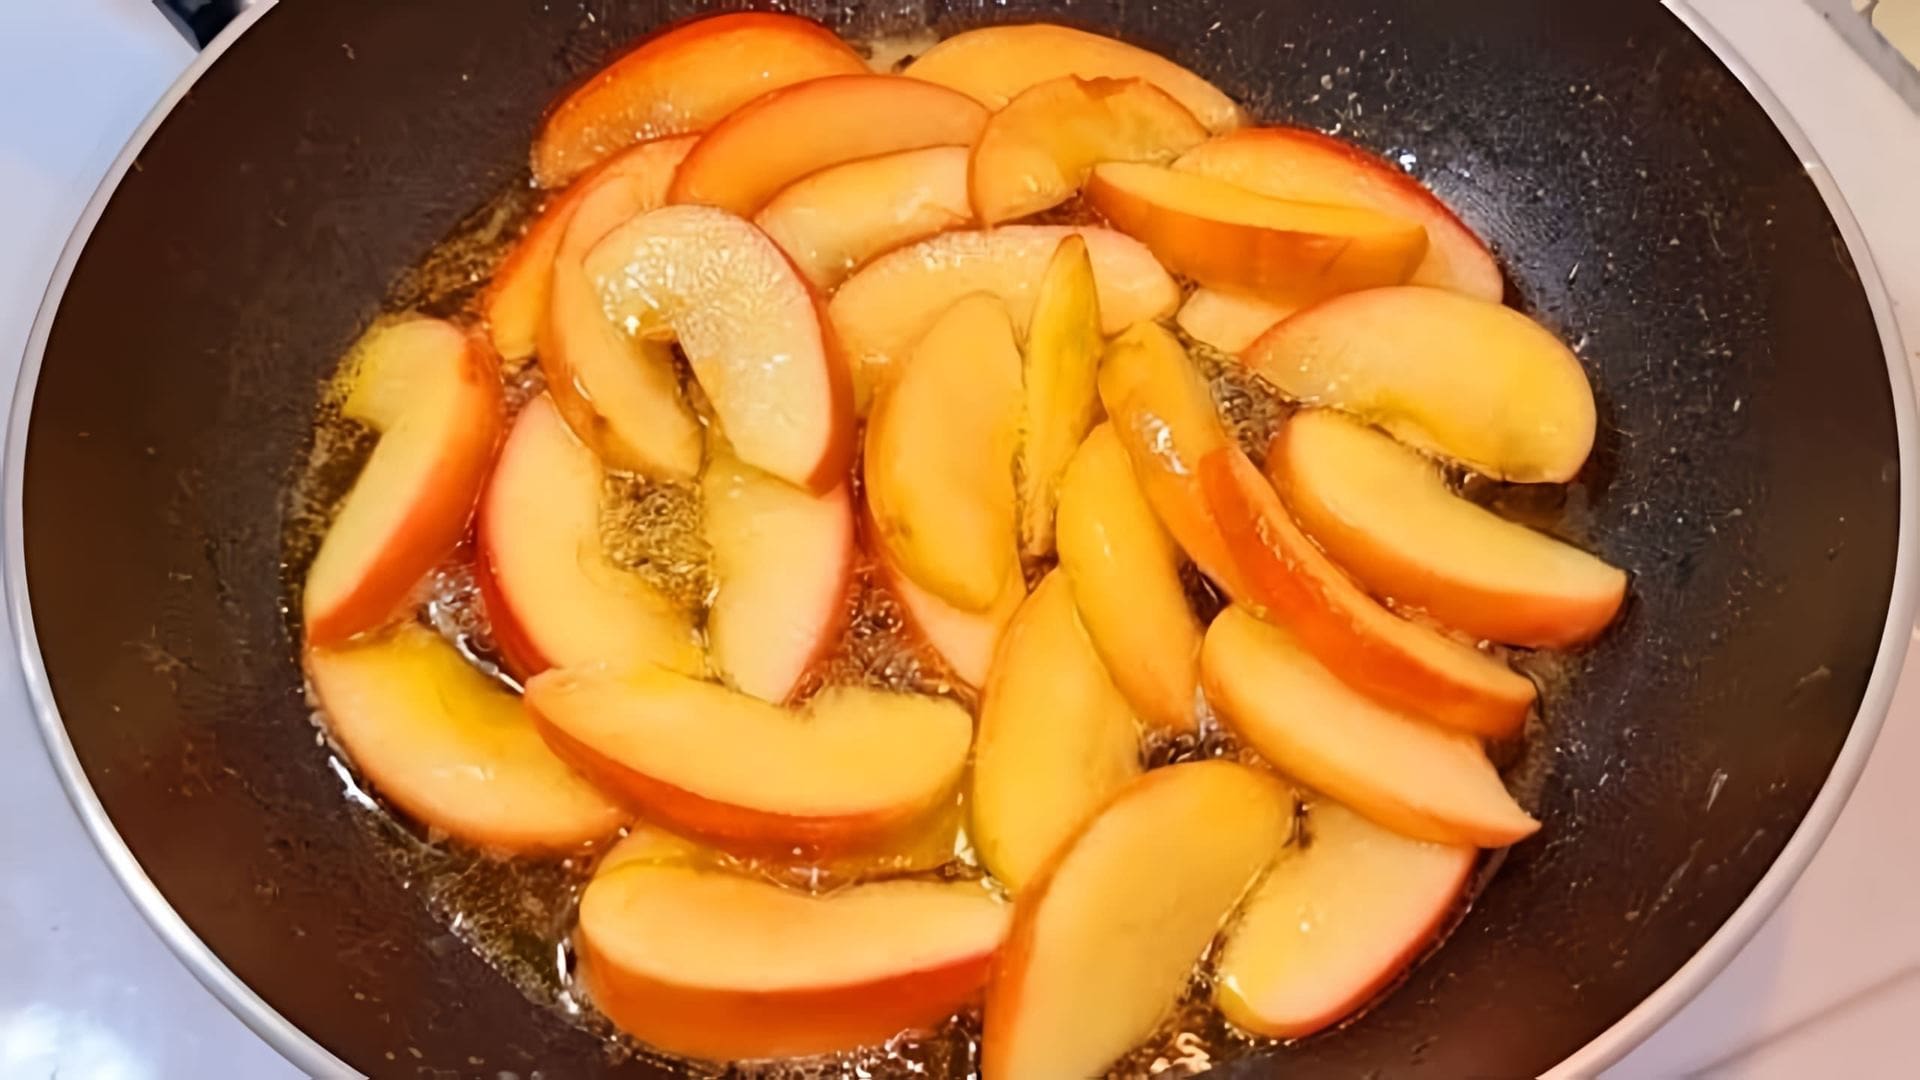 В этом видео-ролике вы увидите, как приготовить вкусный и быстрый завтрак - обжаренные яблоки в масле